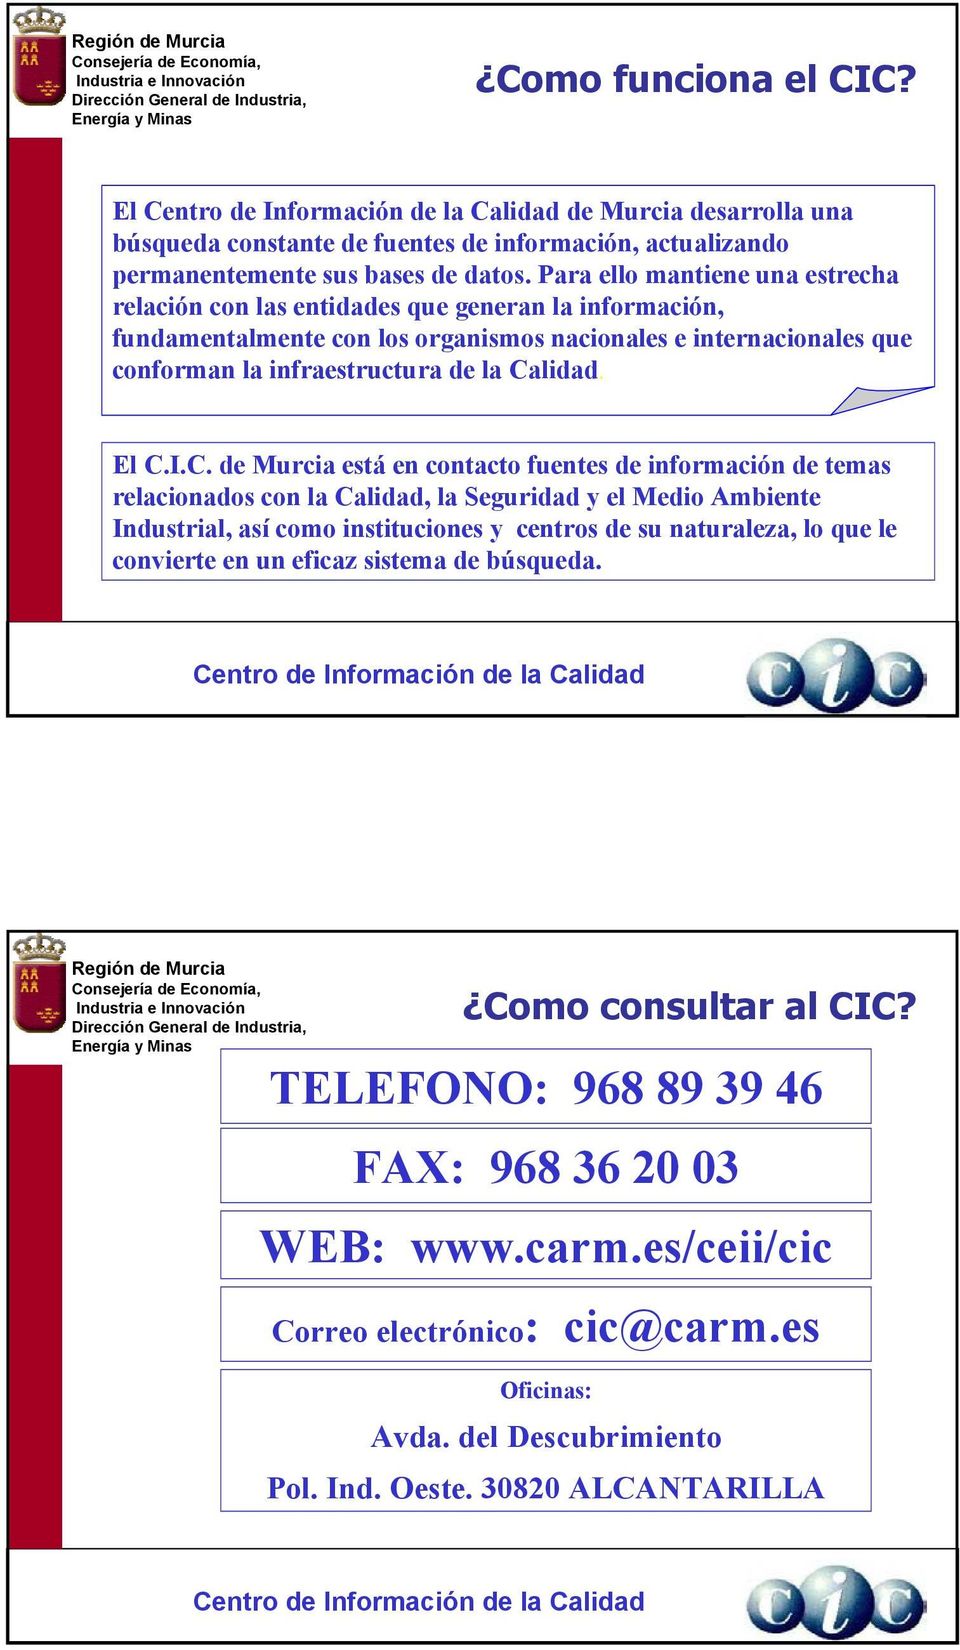 Calidad. El C.I.C. de Murcia está en contacto fuentes de información de temas relacionados con la Calidad, la Seguridad y el Medio Ambiente Industrial, así como instituciones y centros de su